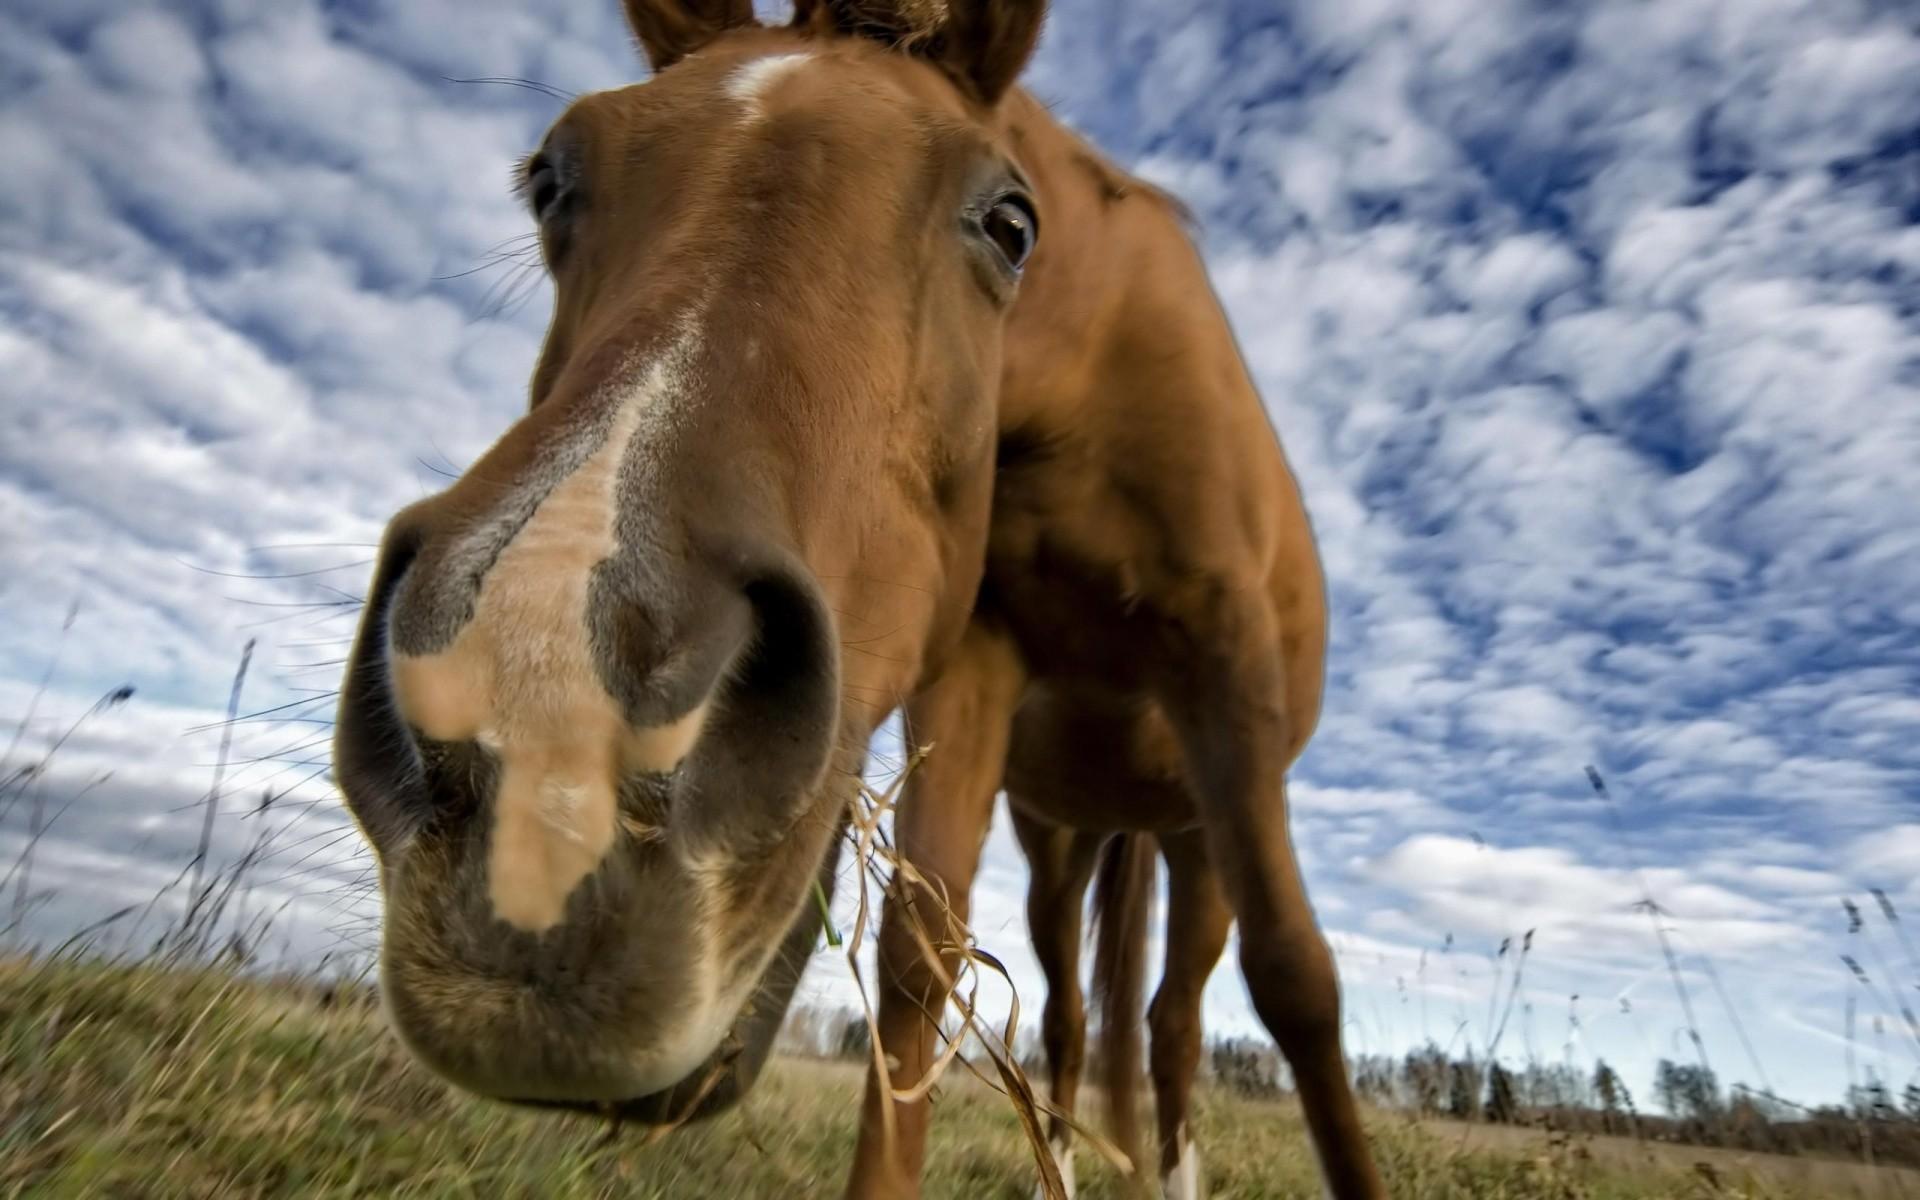 Horse Background Image